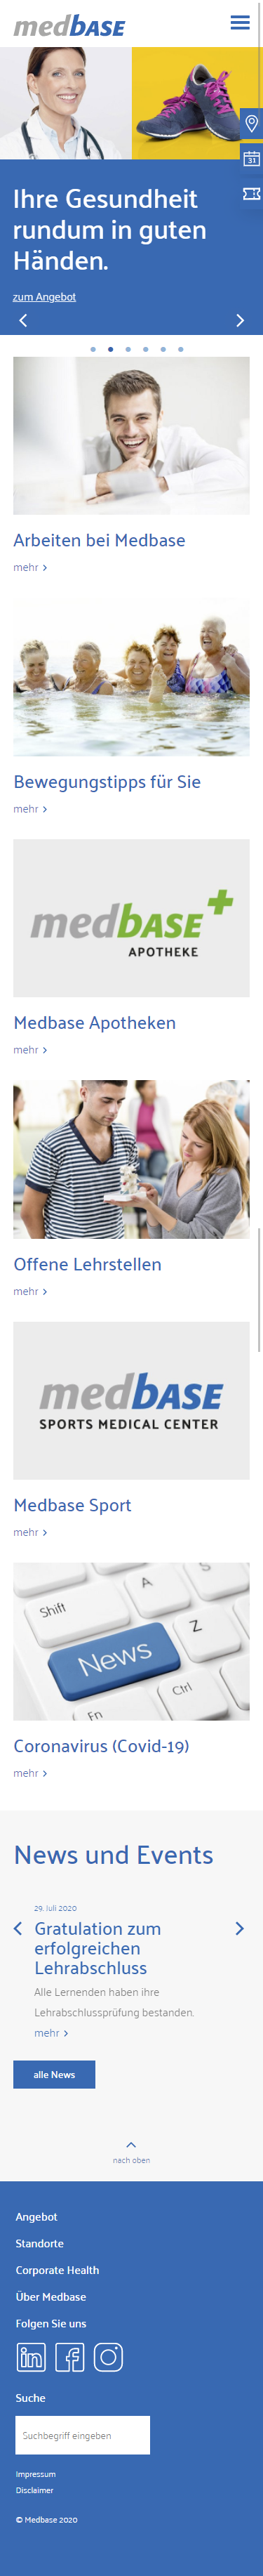 Medbase Mobile